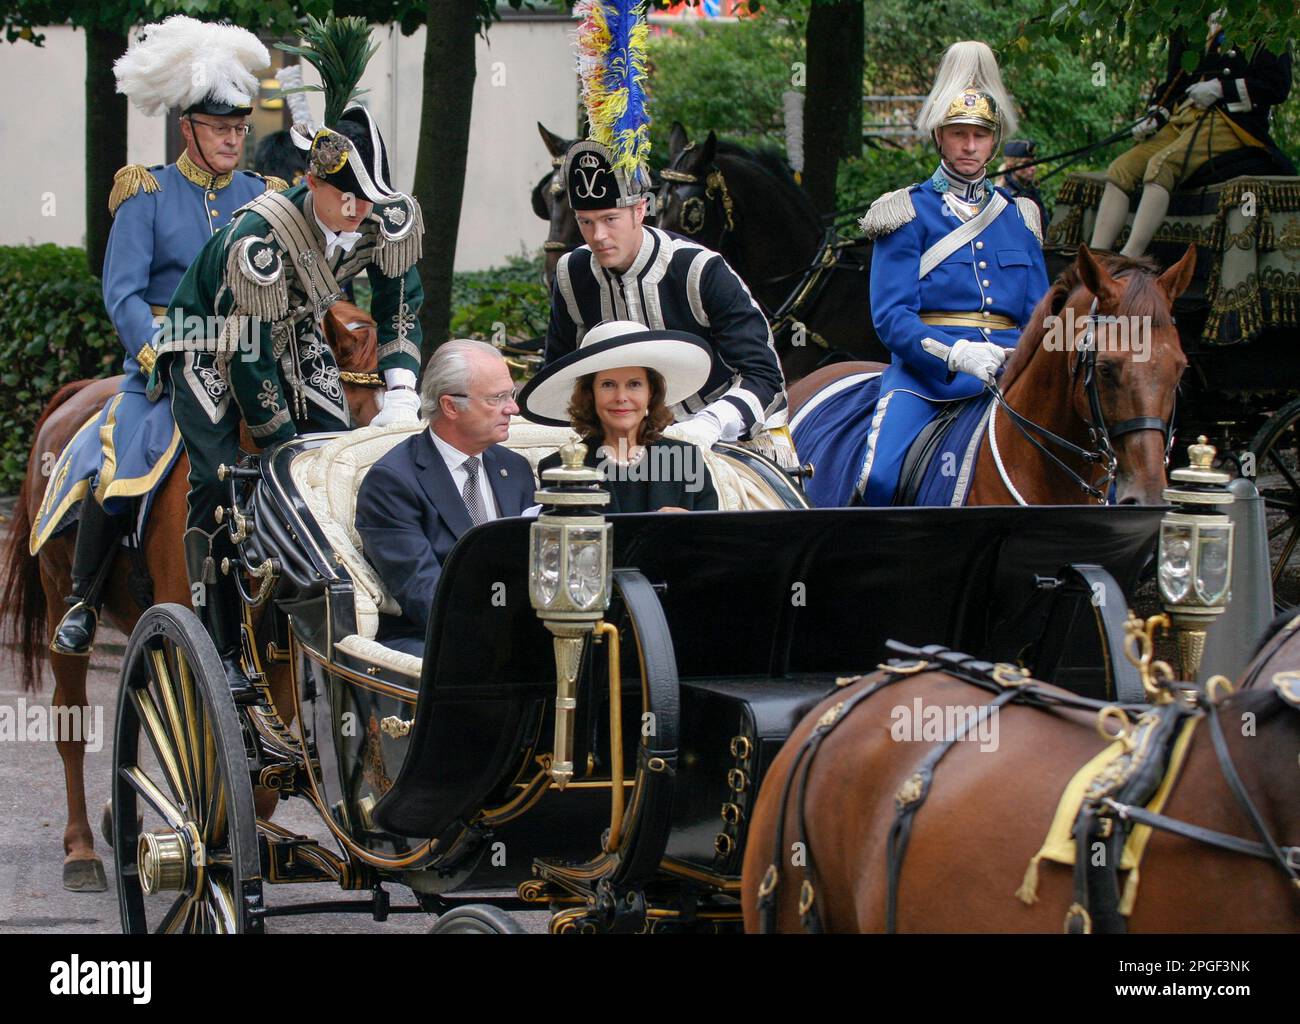 Ankunft DES SCHWEDISCHEN KÖNIGSPAARES am schwedischen Riksdagen und Eröffnung der Zeremonie in einer offenen Kutsche, gefolgt von Pferden Stockfoto